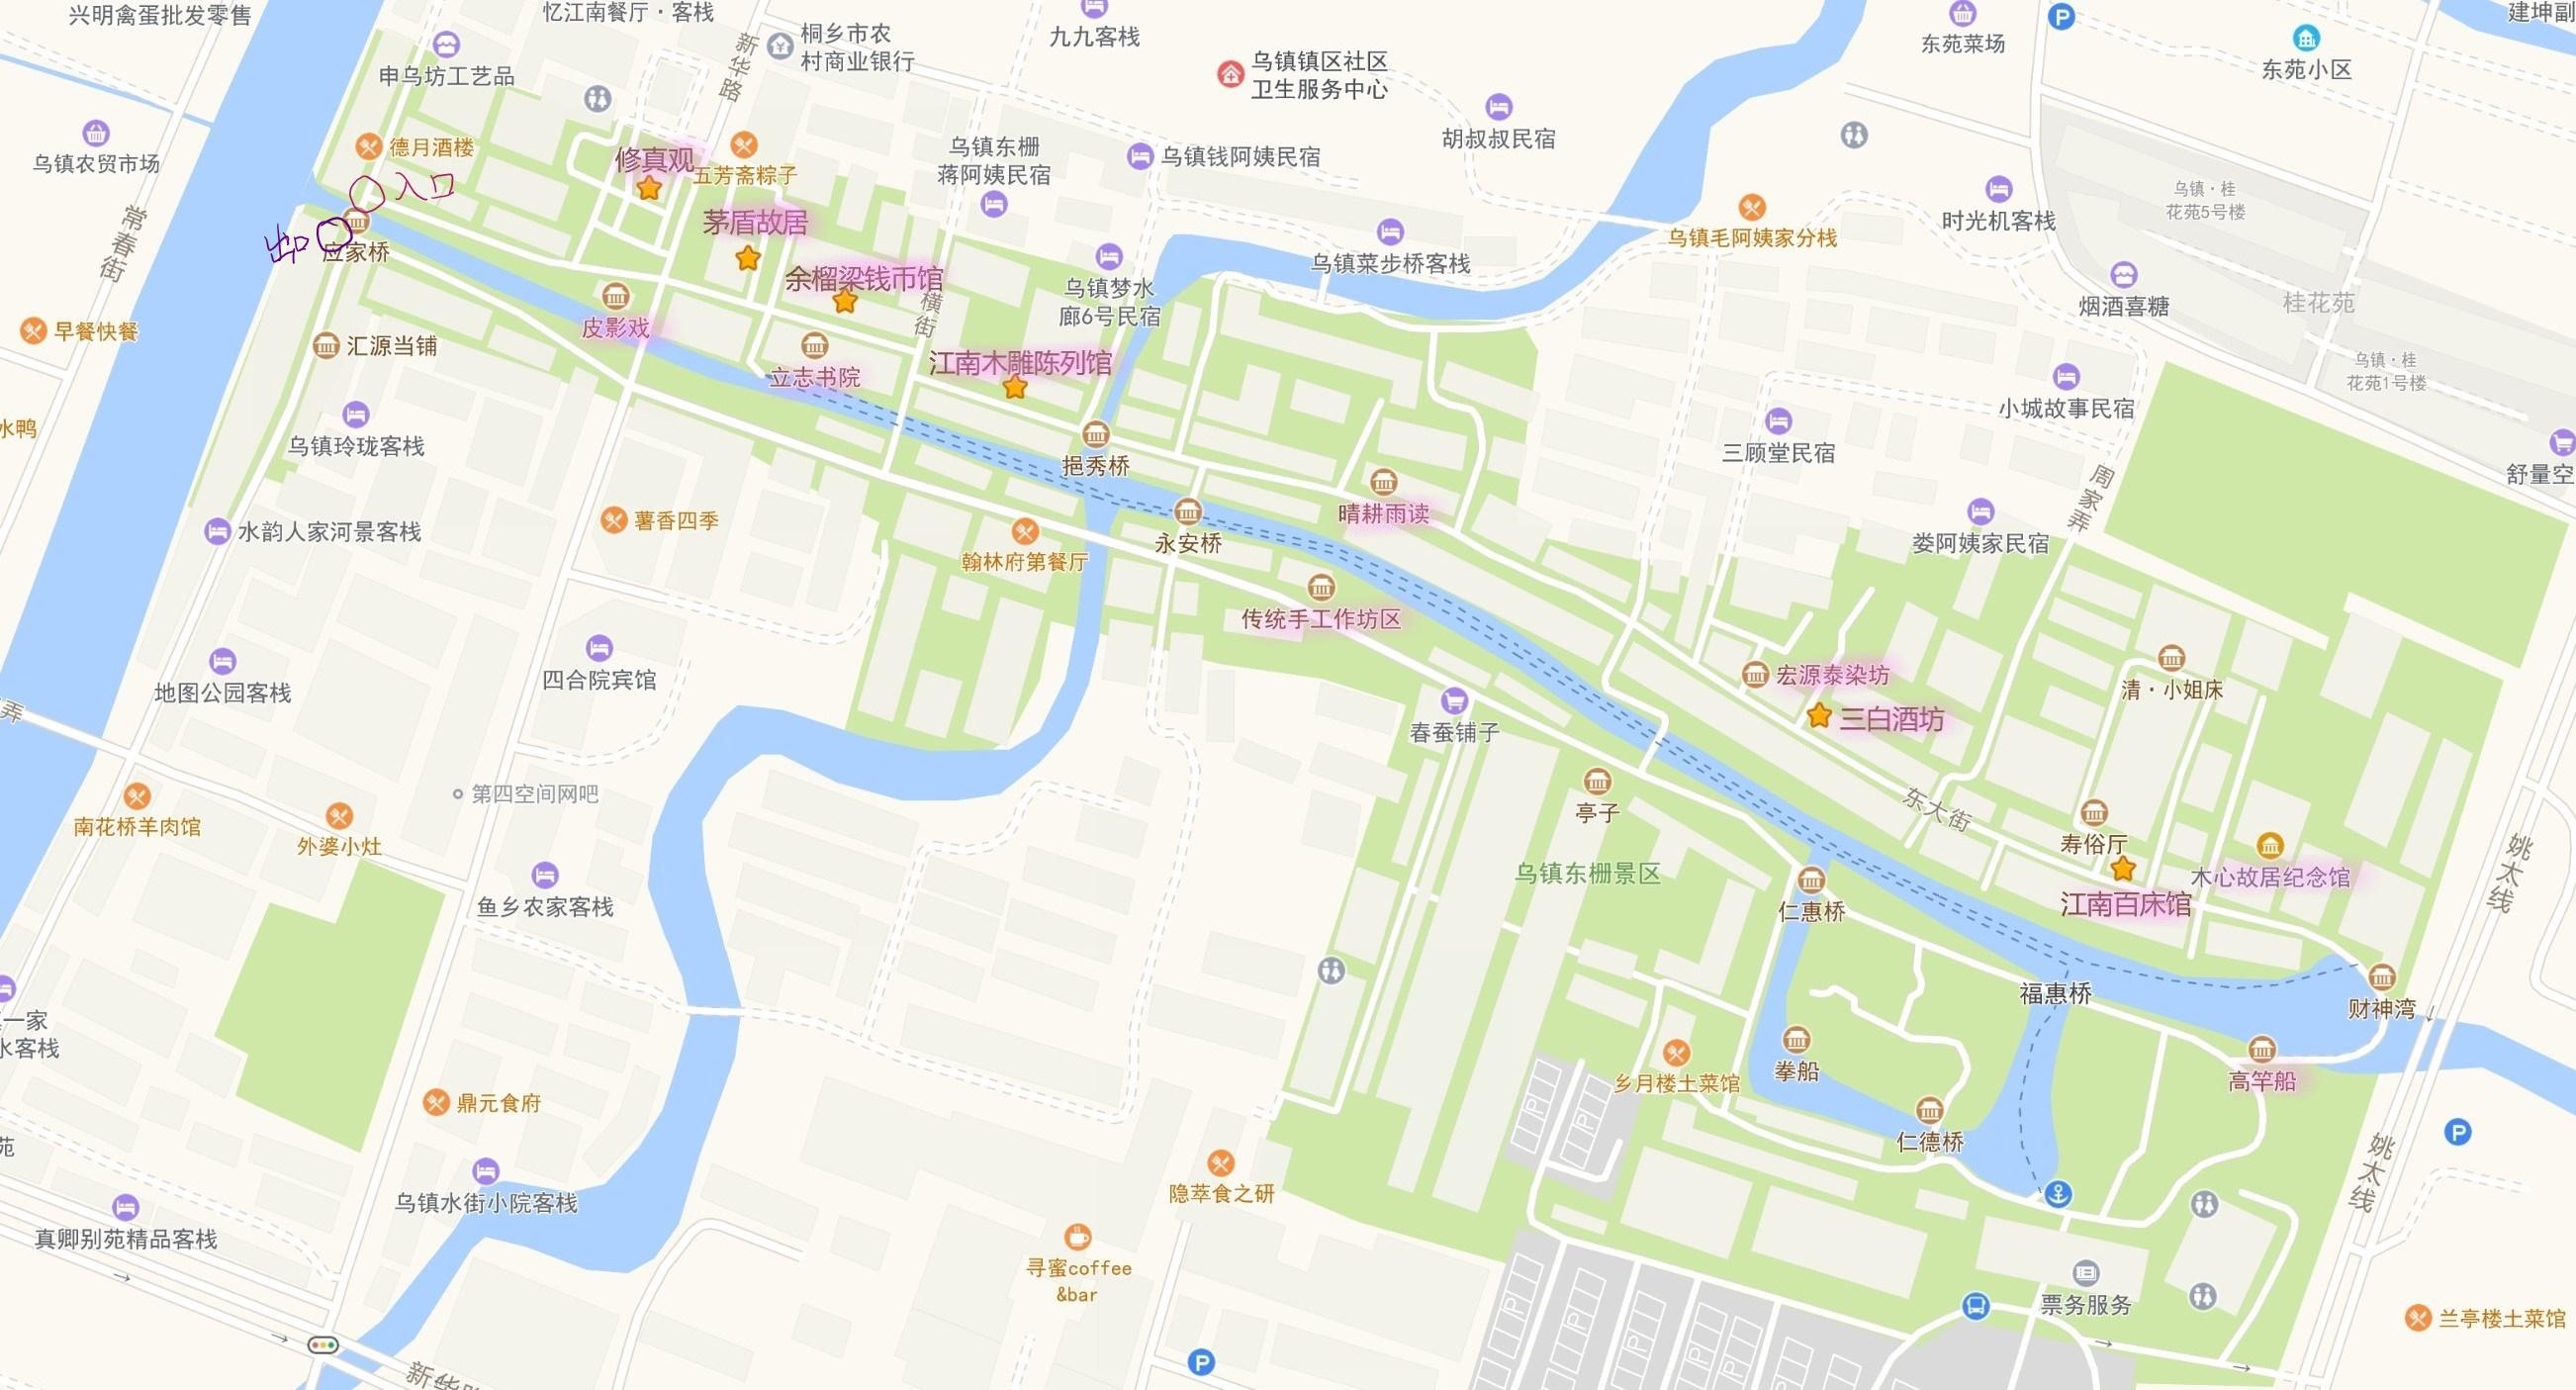 乌镇西栅电子地图图片